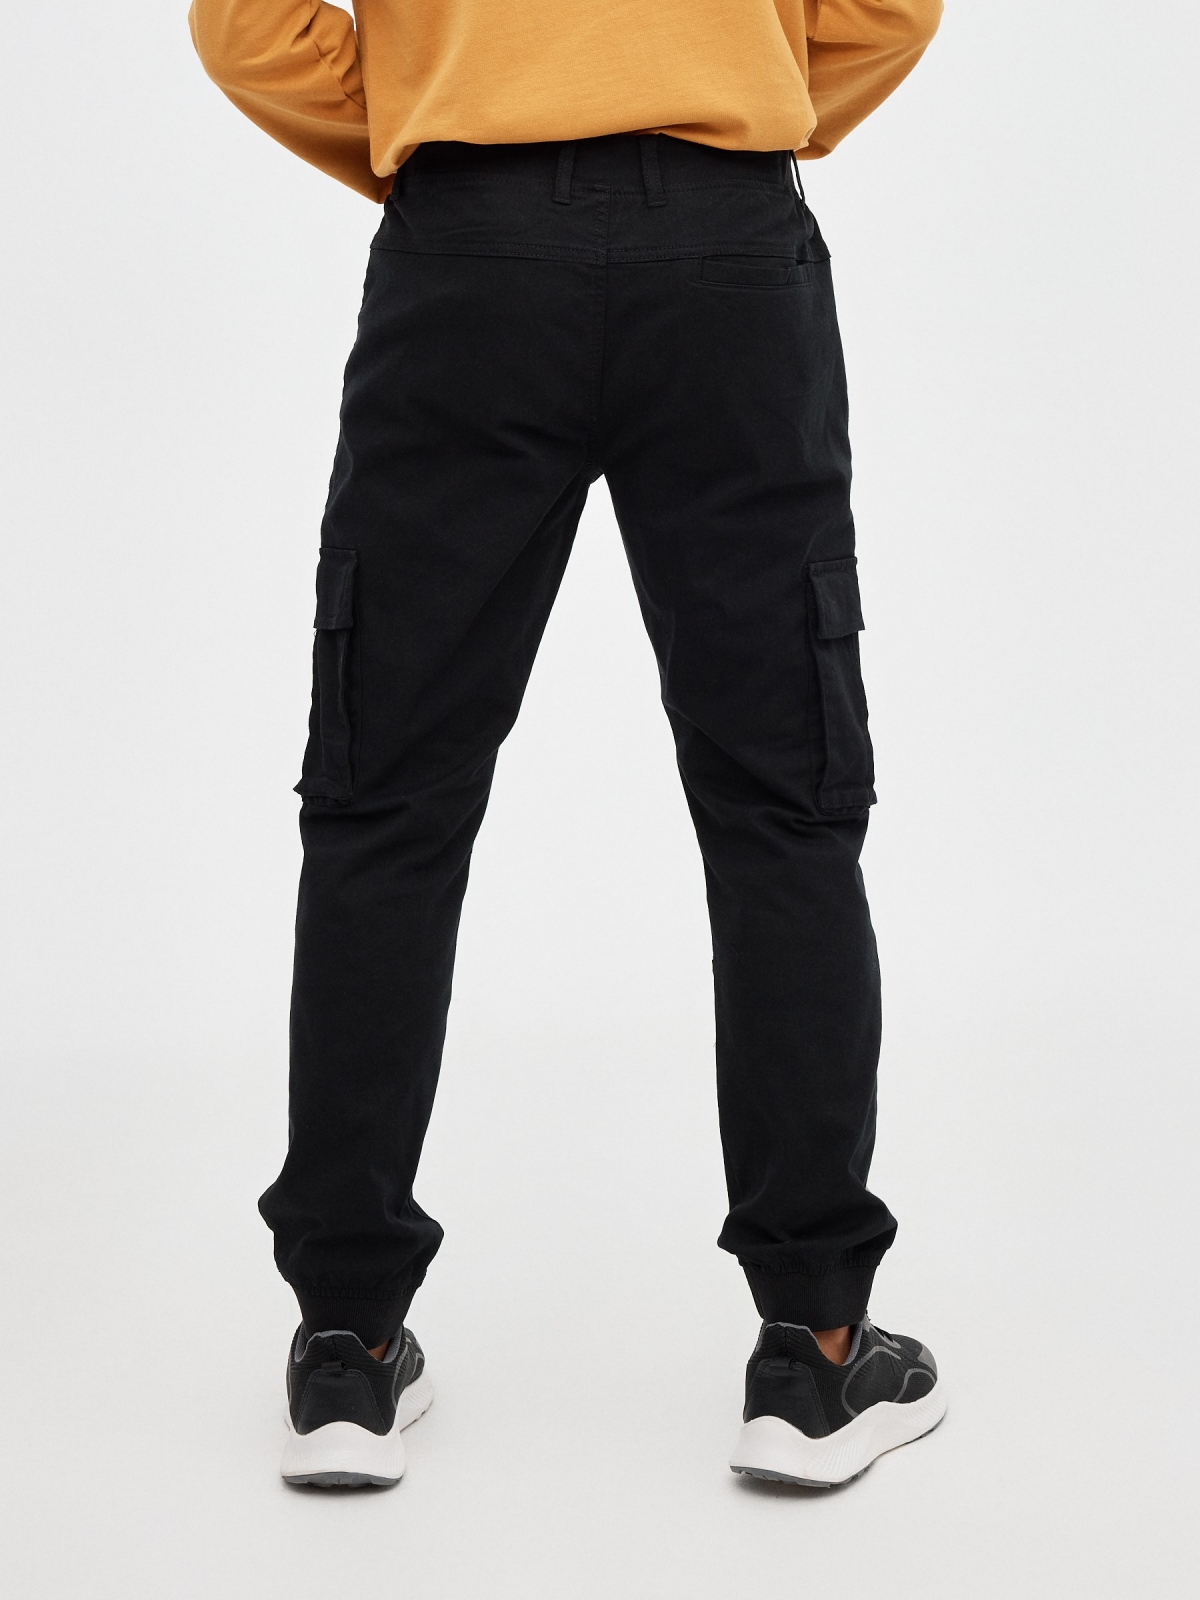 Pantalón jogger perneras con bolsillos negro vista media trasera